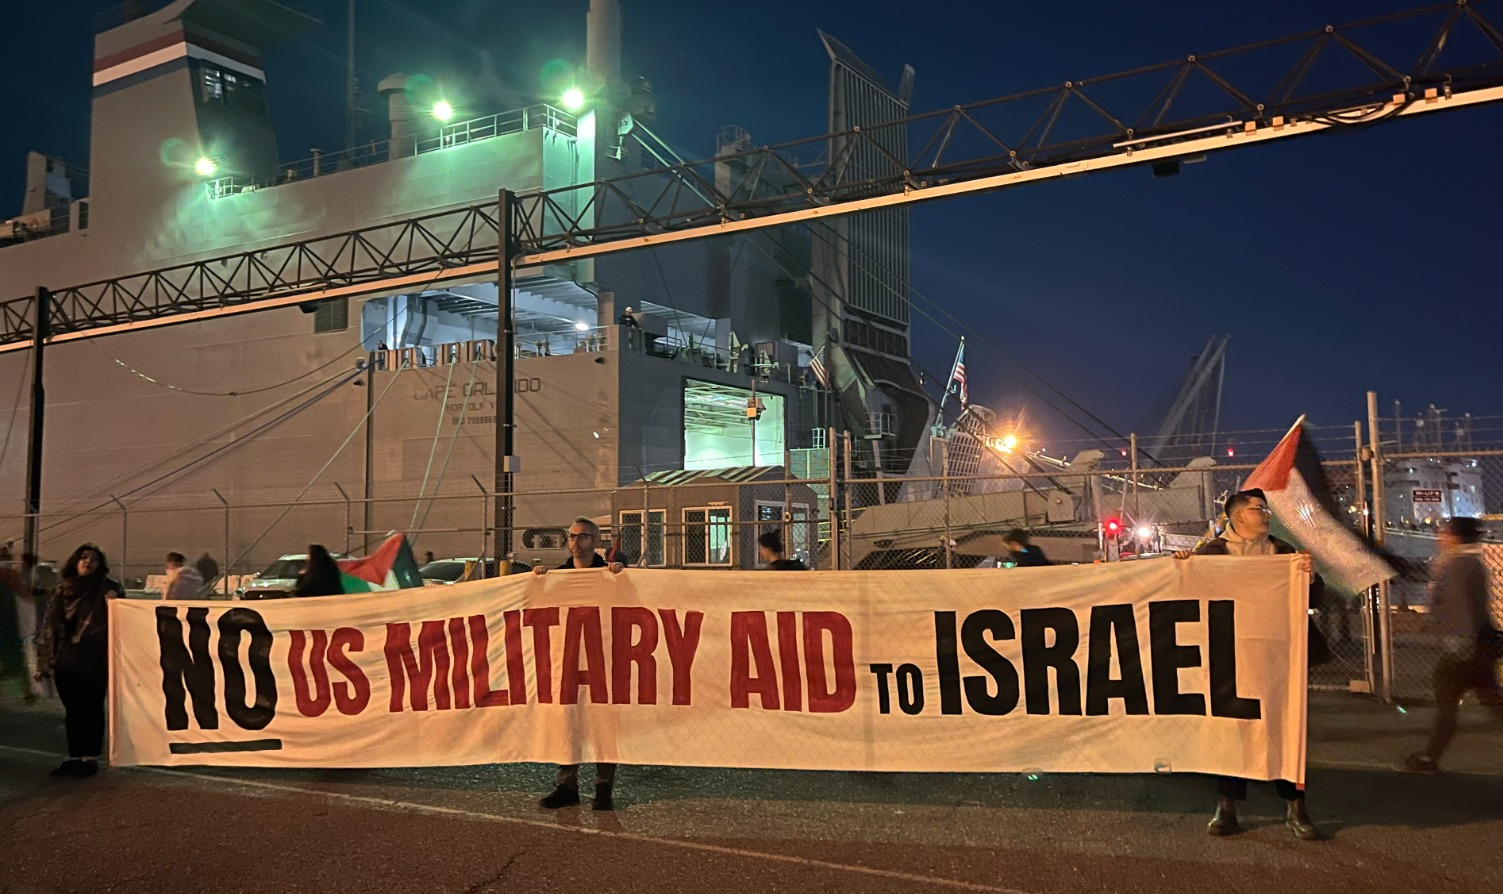 Organização árabe bloqueia navio com ajuda militar dos EUA a Israel